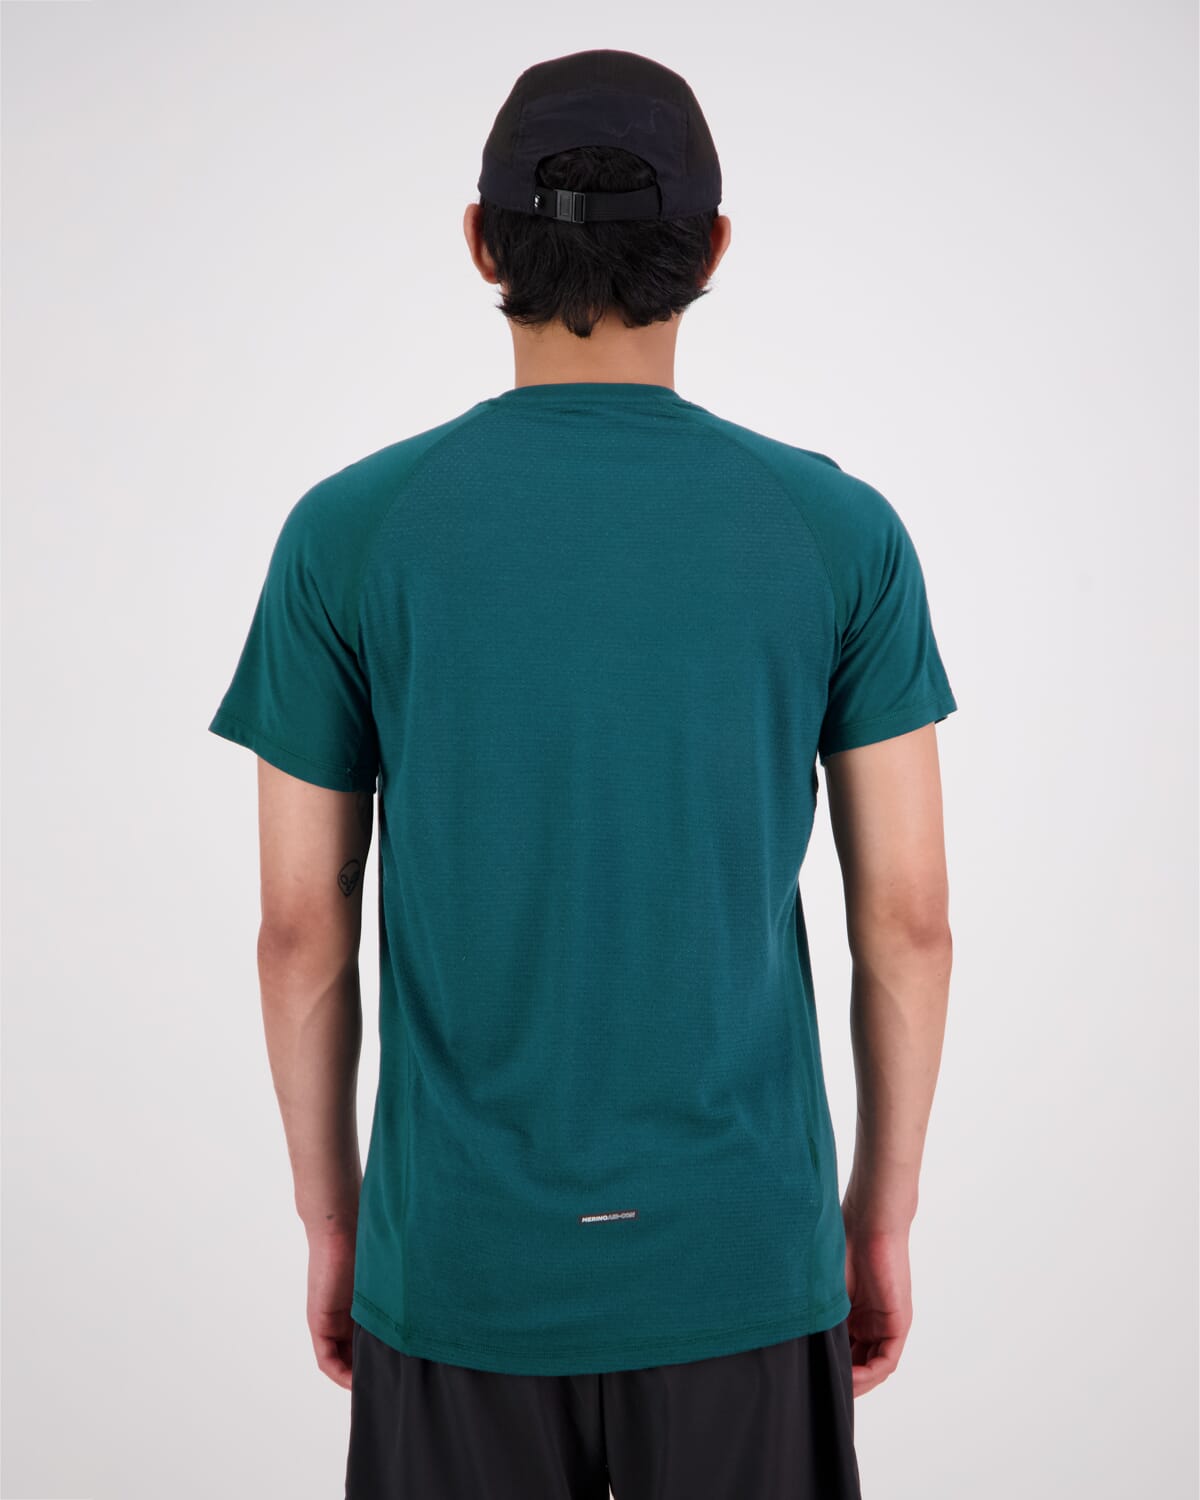 Temple Merino Air-Con T-Shirt - Evergreen